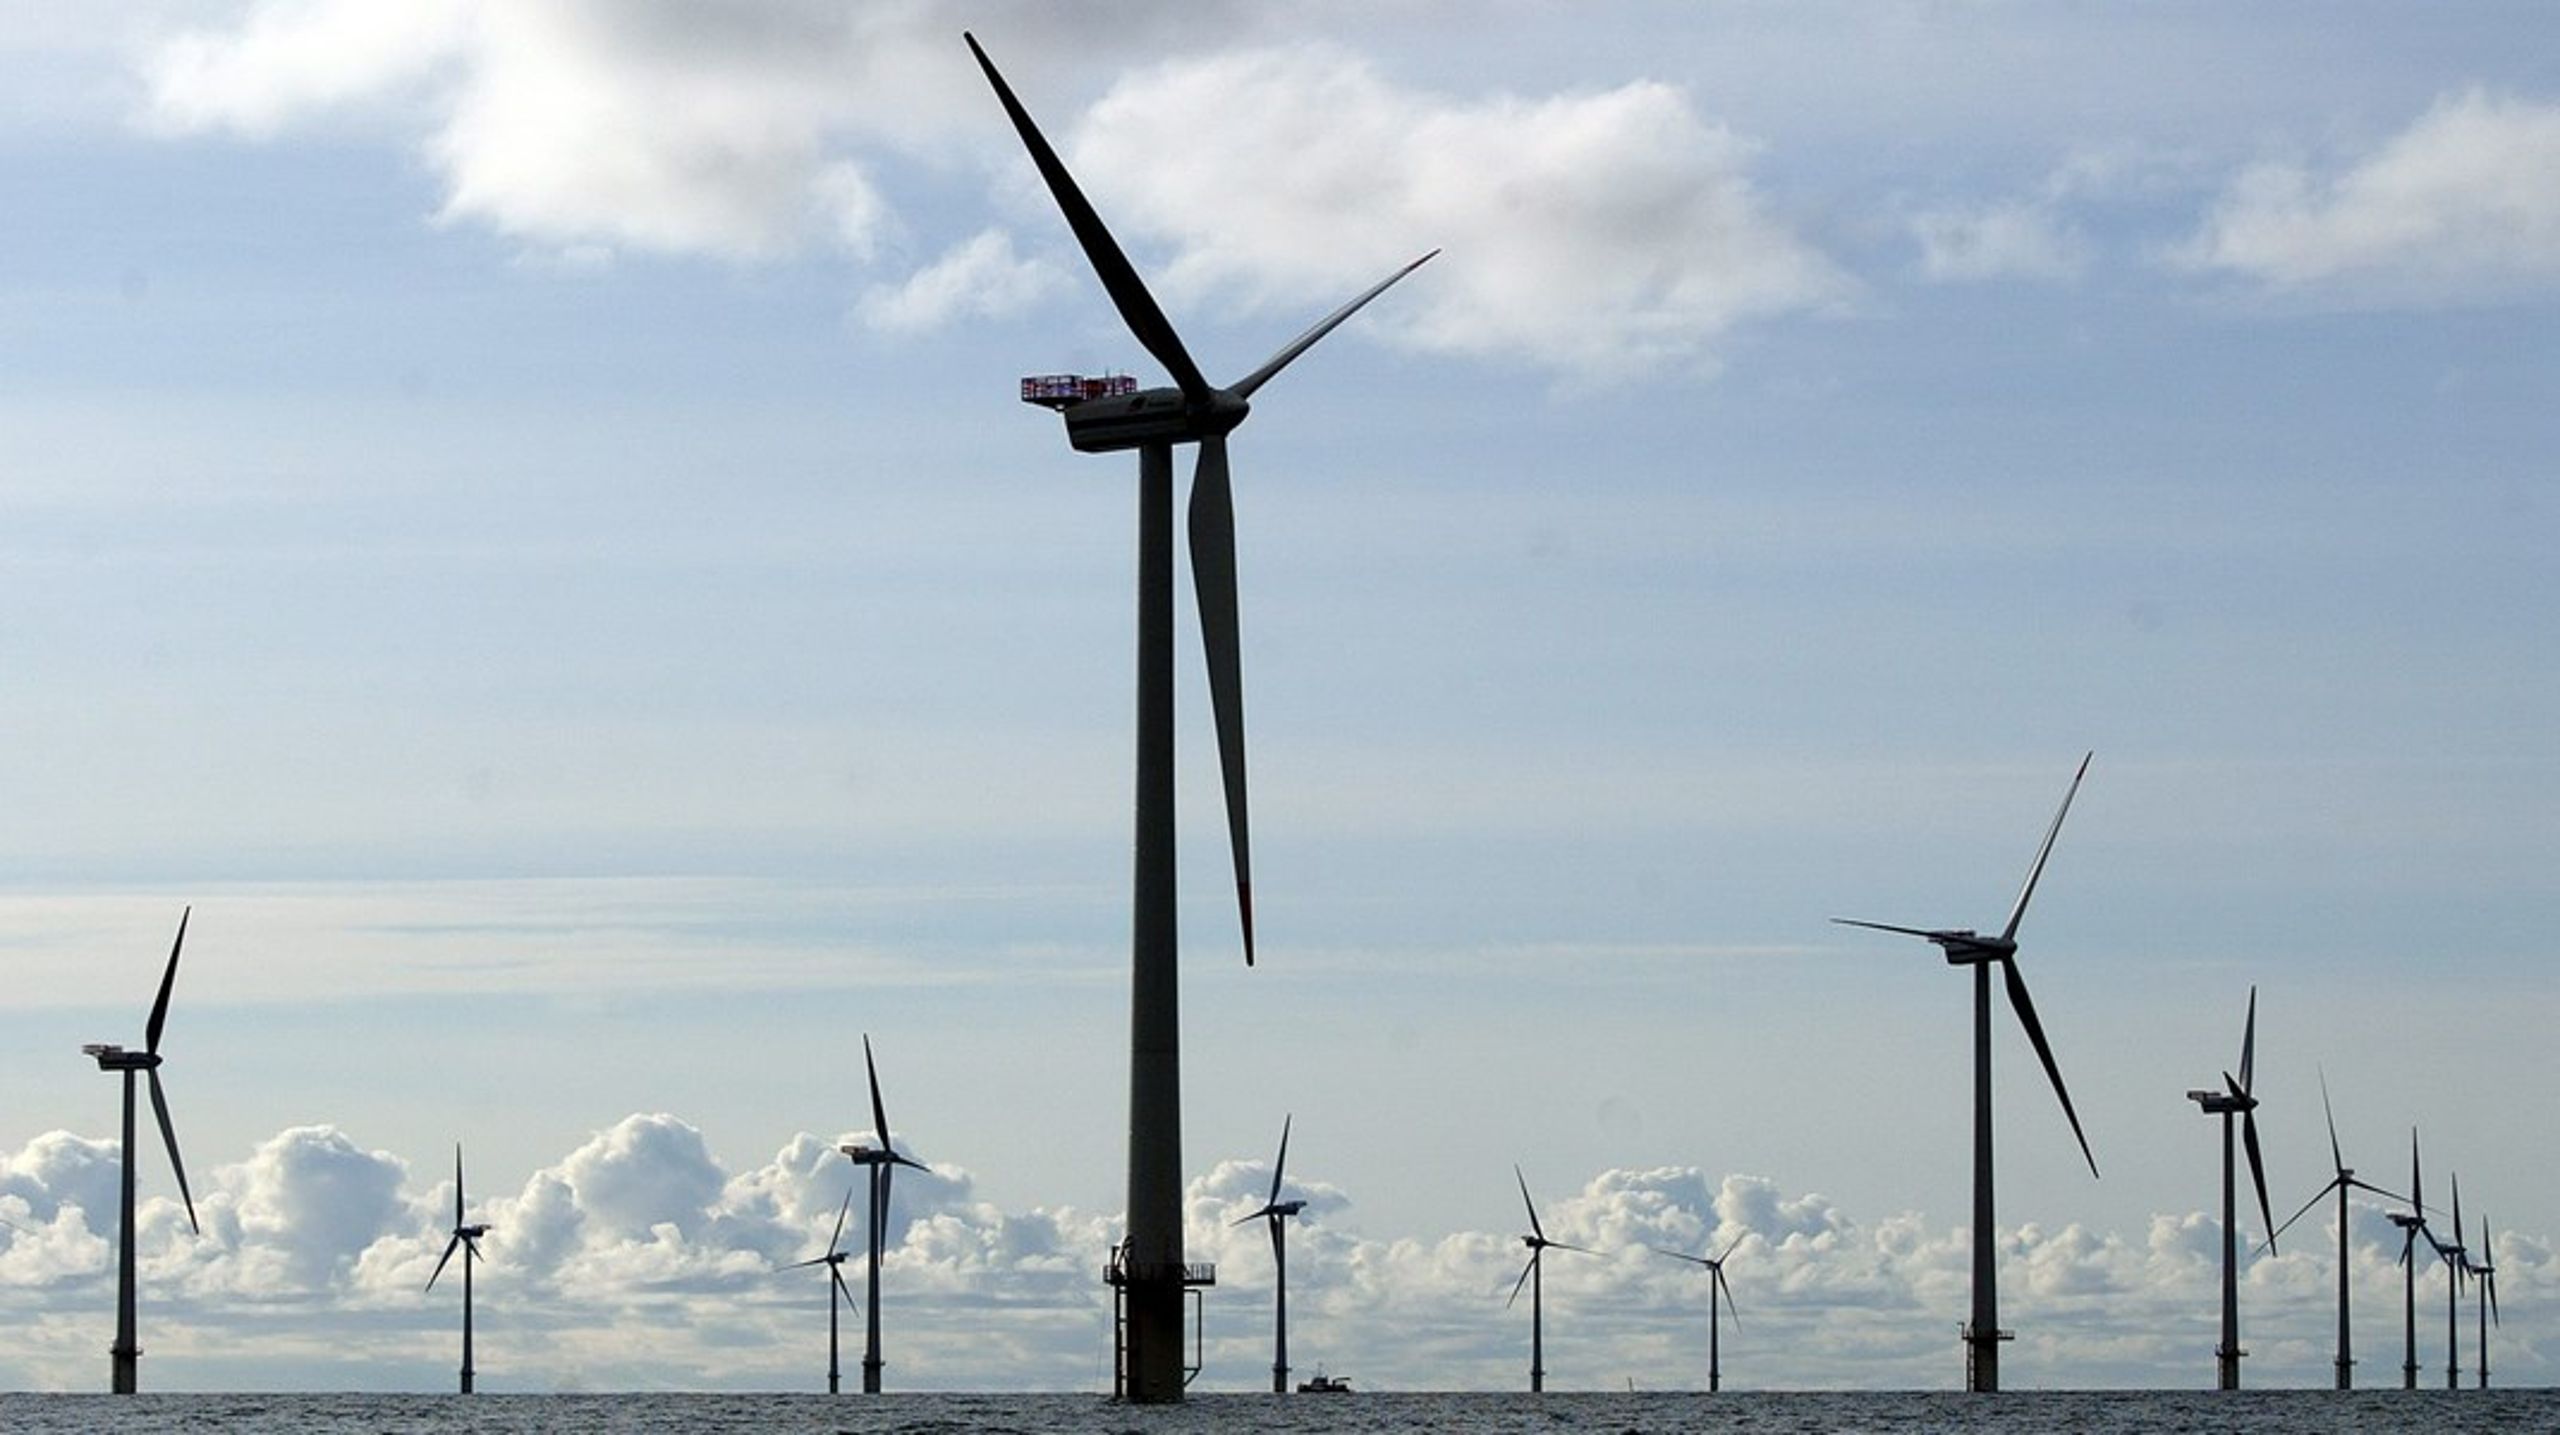 I Danmark har vi den industrielle styrke til at gennemføre de første energiøprojekter i verden, og det vil samtidigt cementere vores position som førernation inden for vindmølleteknologi, hvis vi kommer først, skriver Troels Ranis.&nbsp;